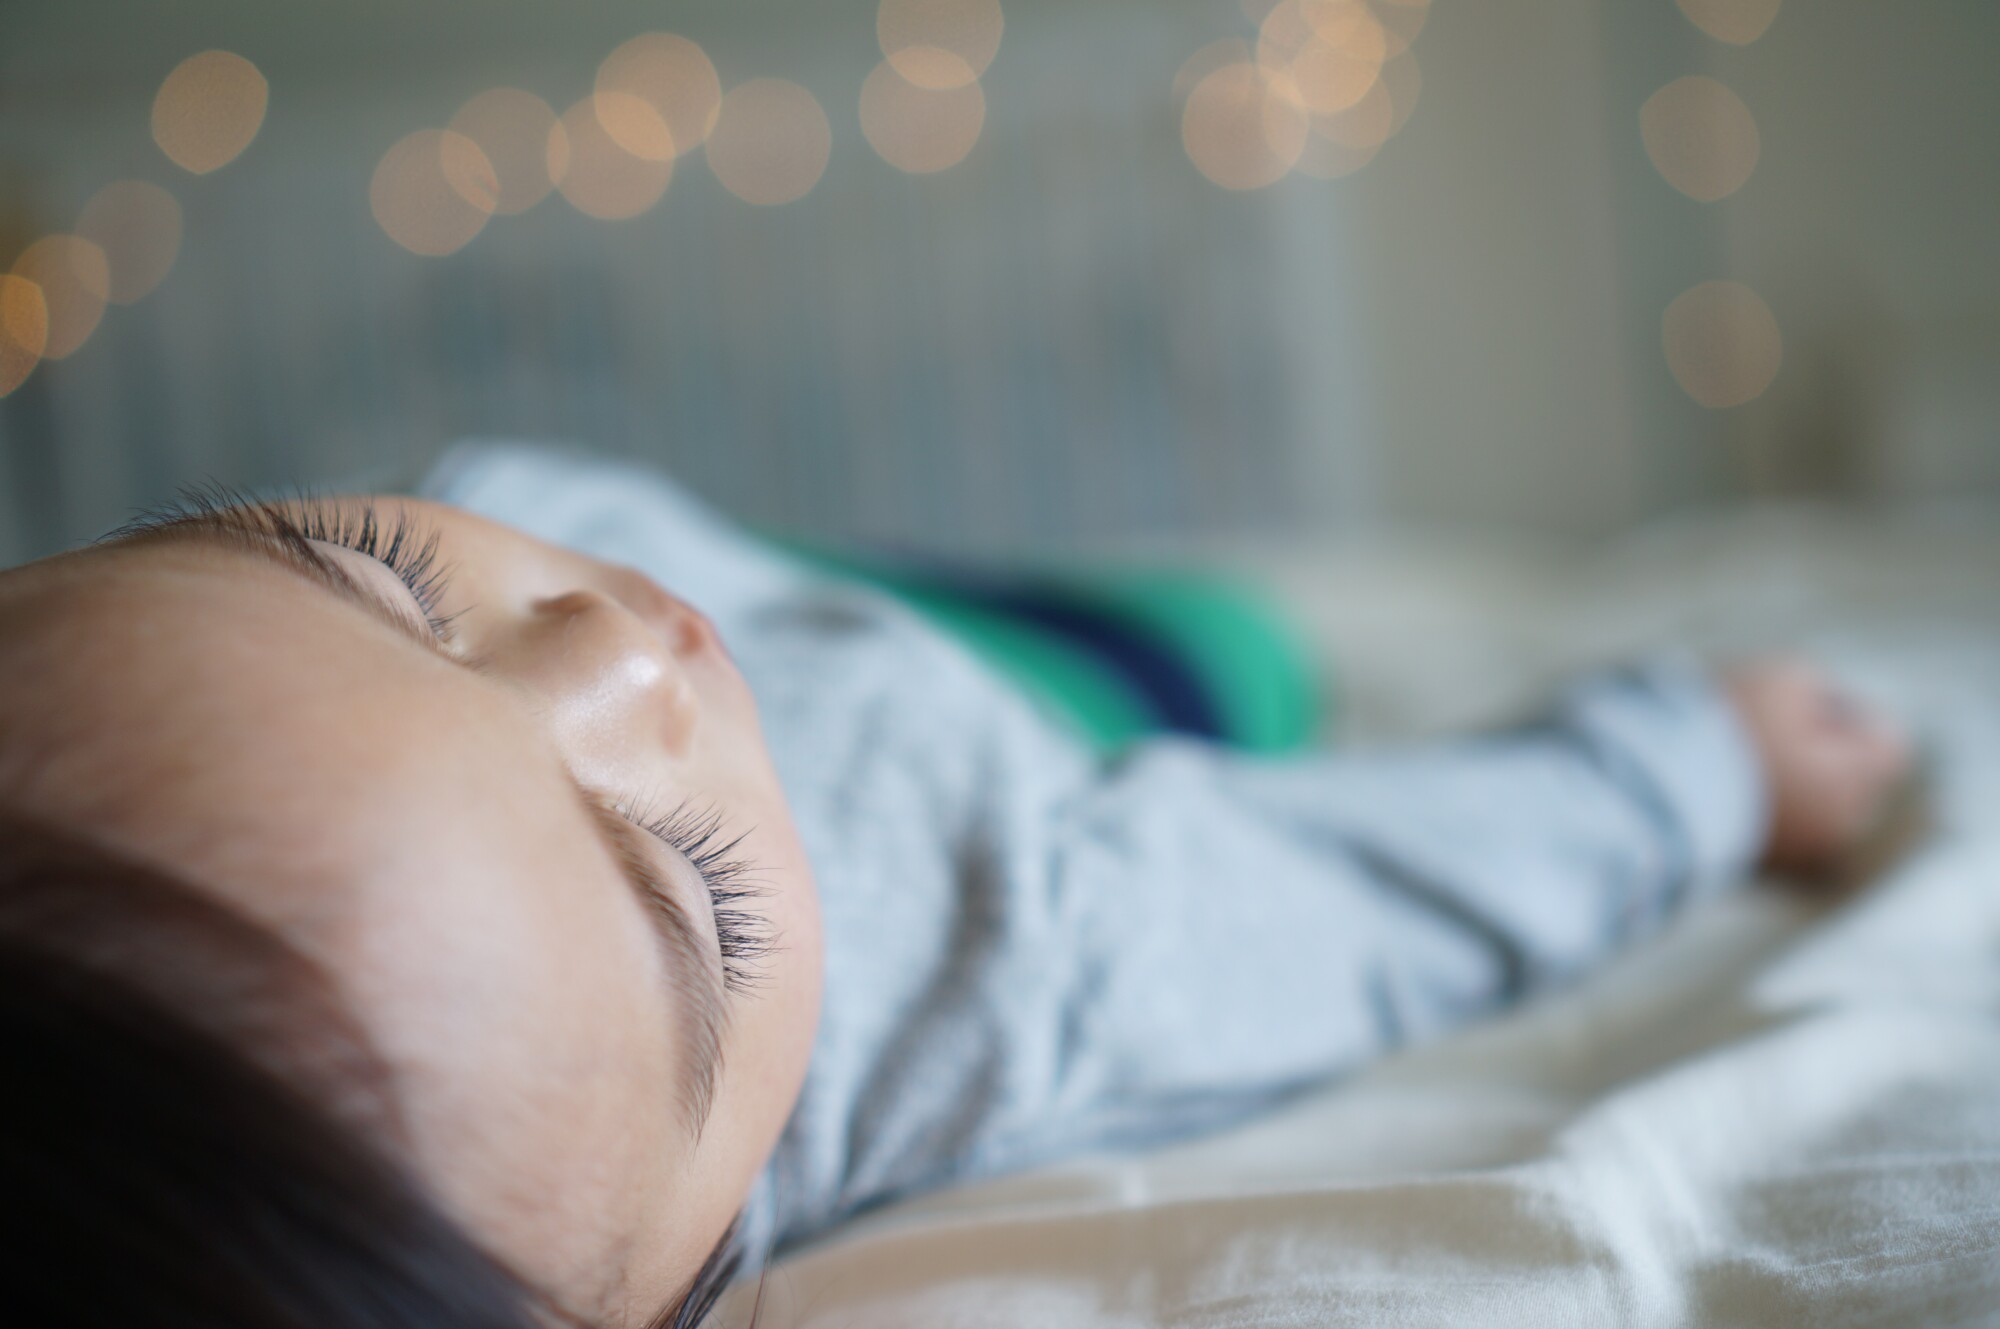 Sleep Regression in Babies